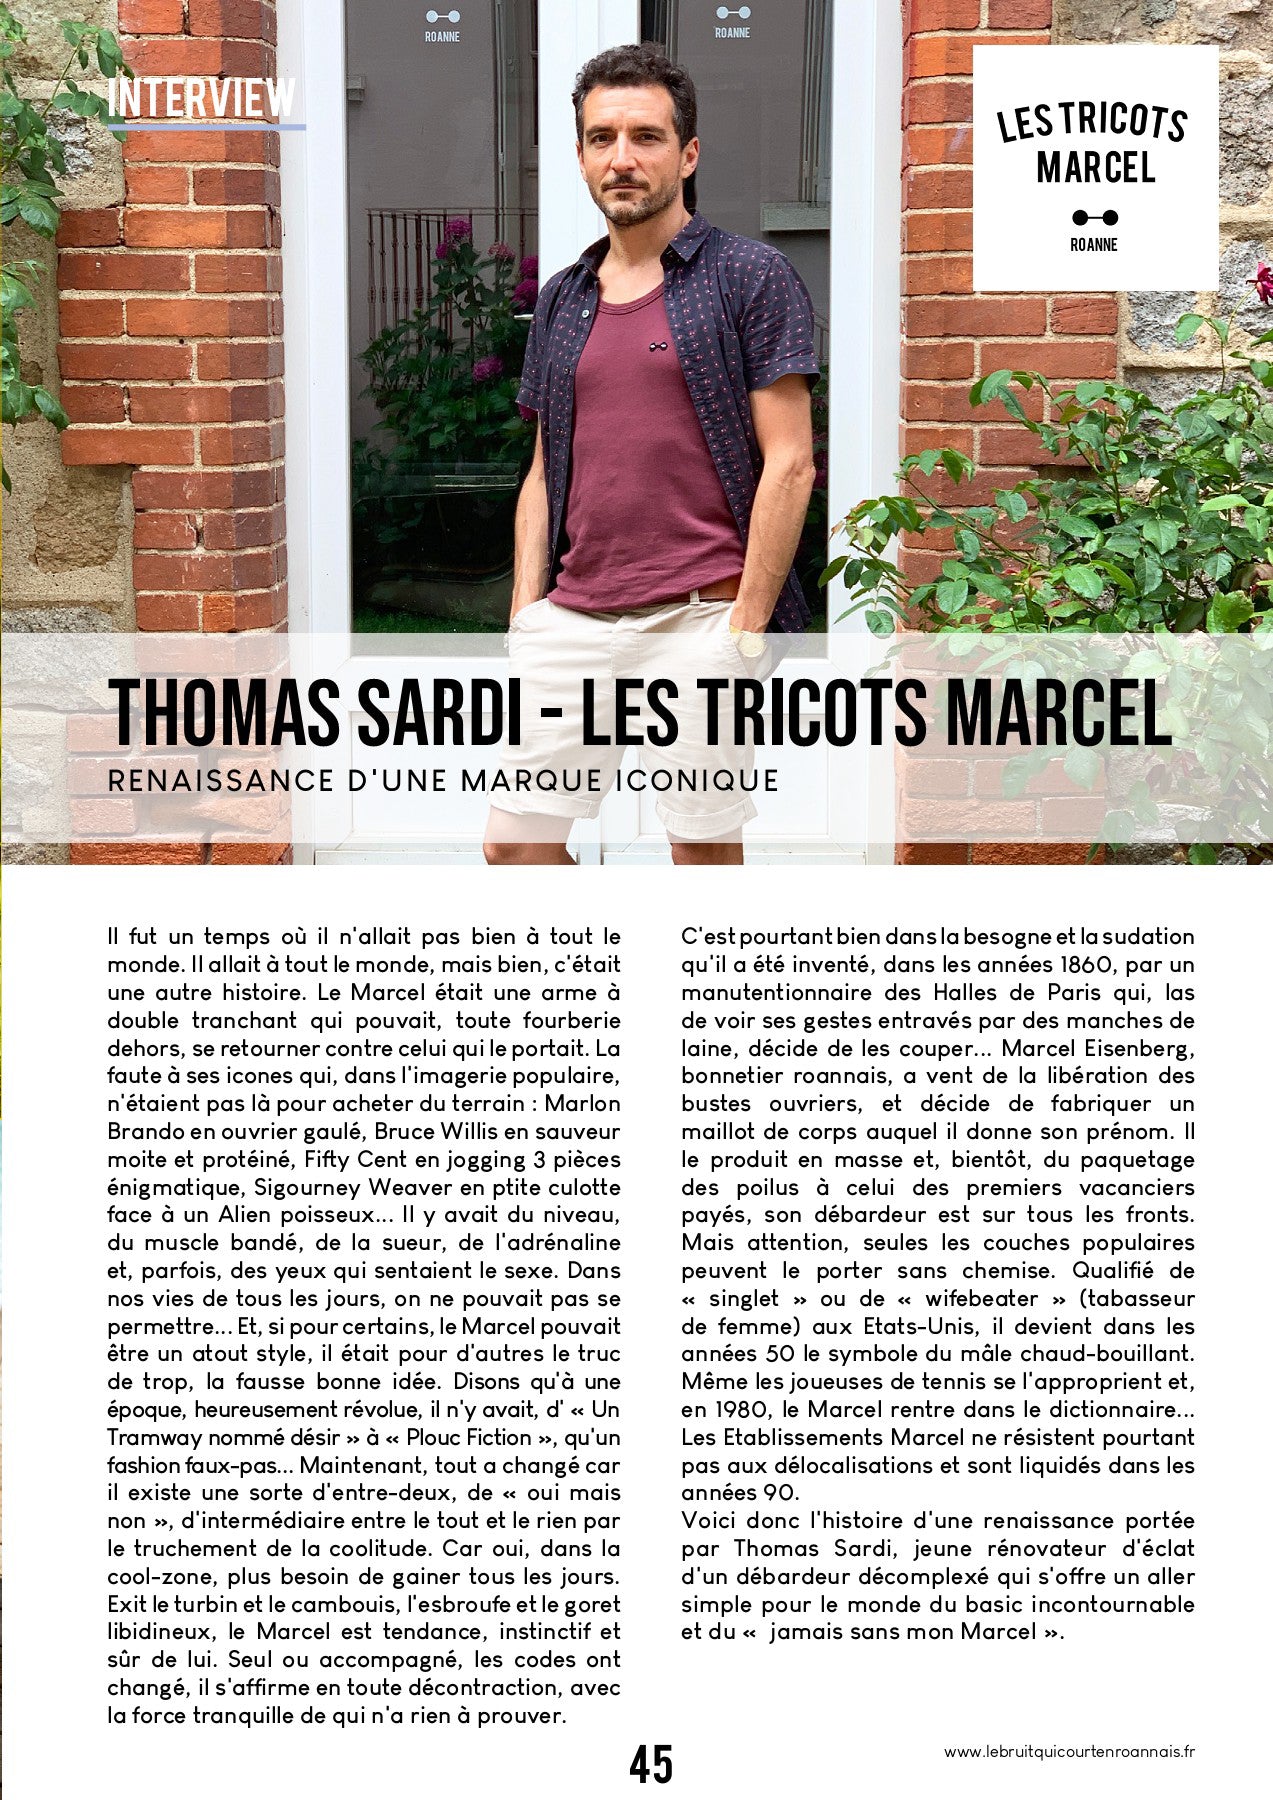 Les Tricots Marcel dans le bruit qui court en Roannais été 2020 Interview Thomas SARDI page 1